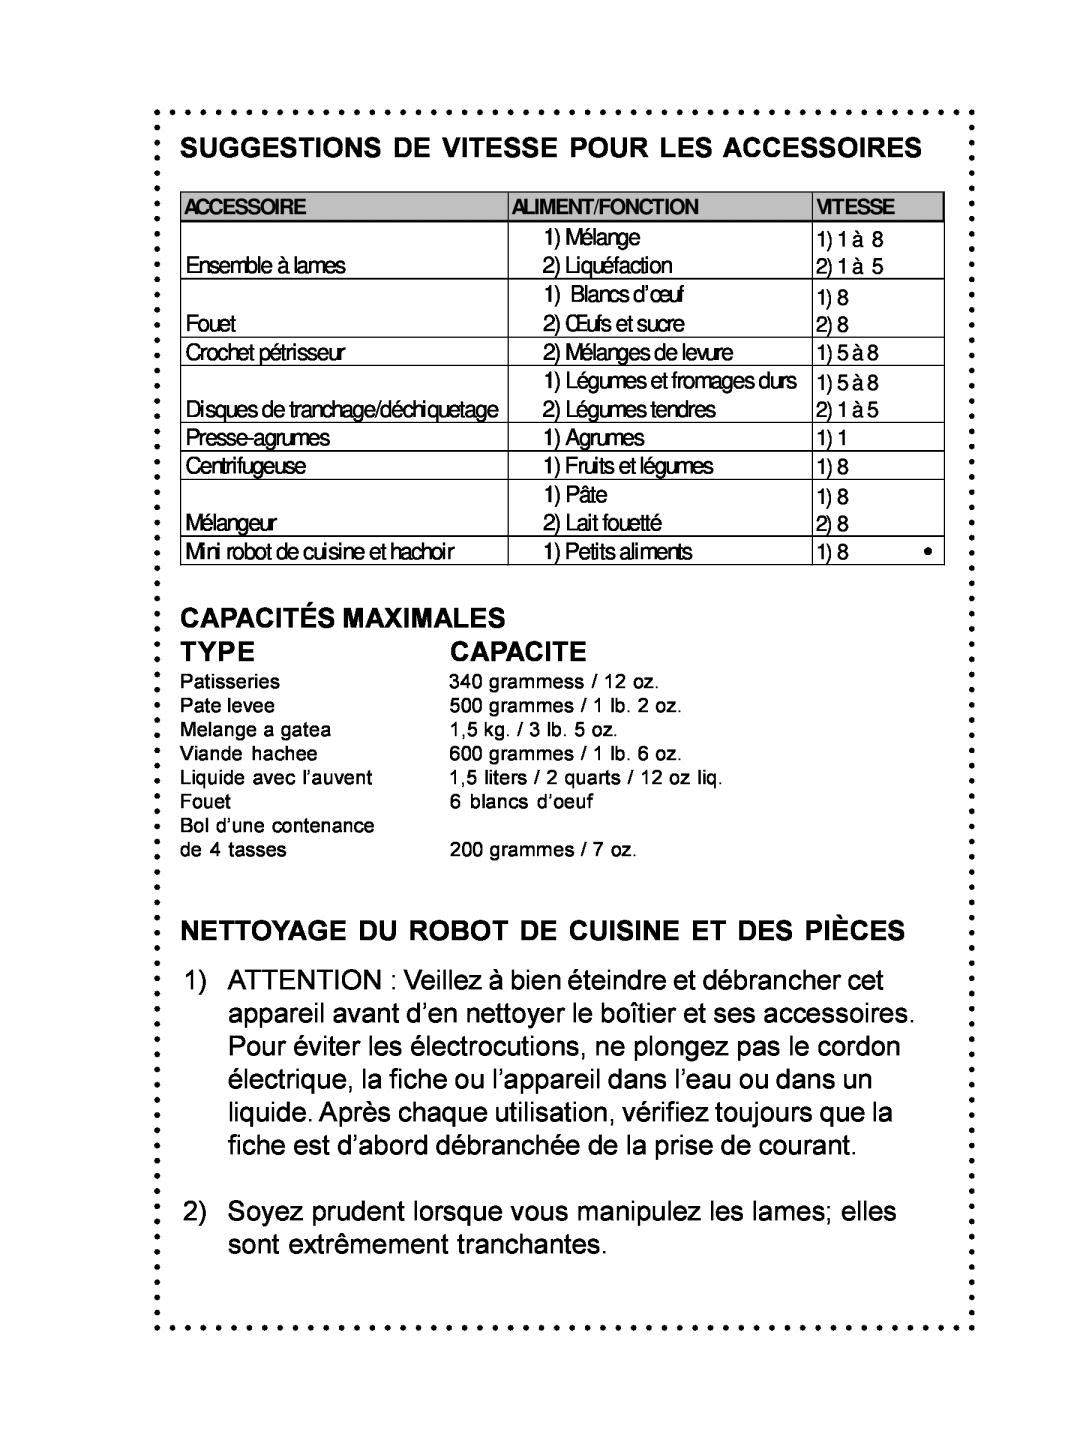 DeLonghi DFP690 Series instruction manual Suggestions De Vitesse Pour Les Accessoires, Capacités Maximales, Capacite, Type 